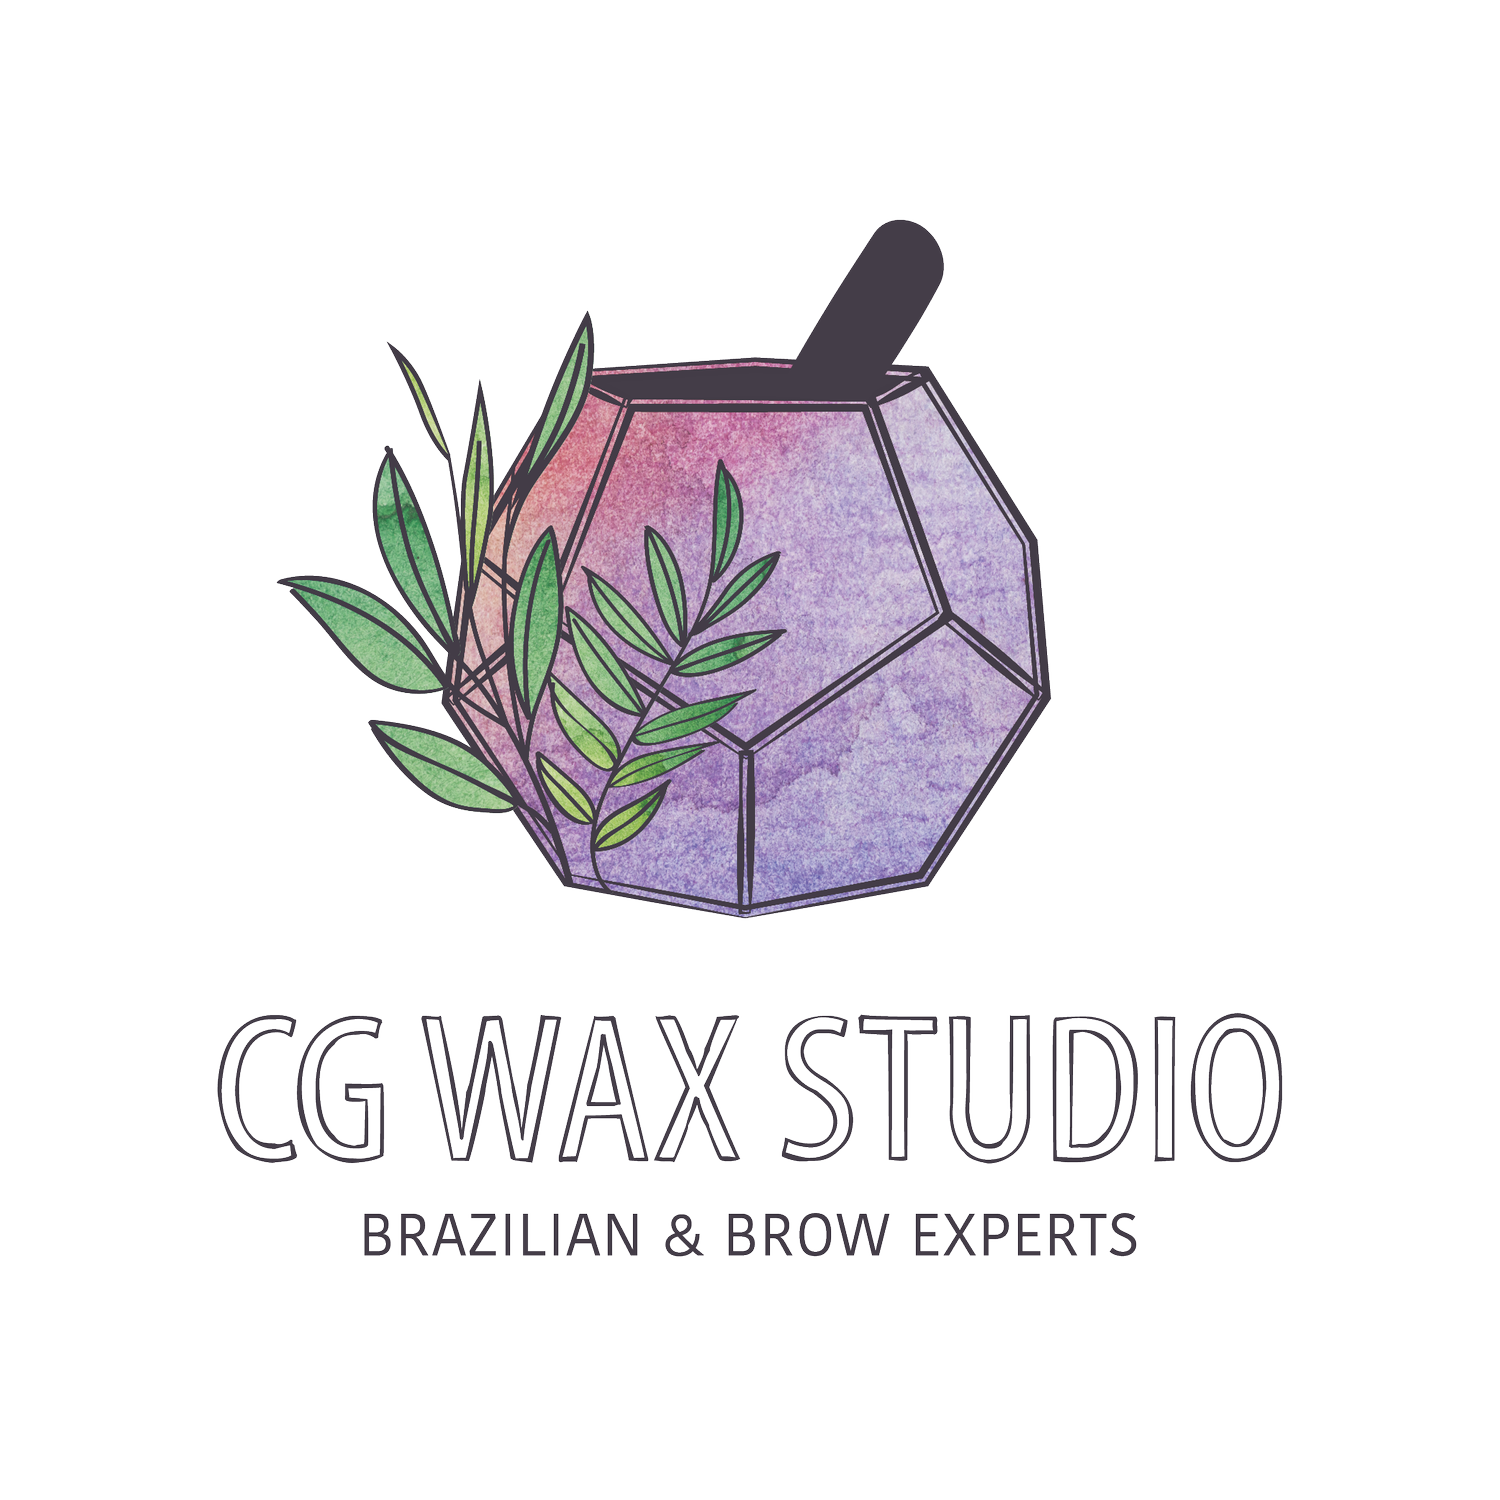 CG WAX STUDIO